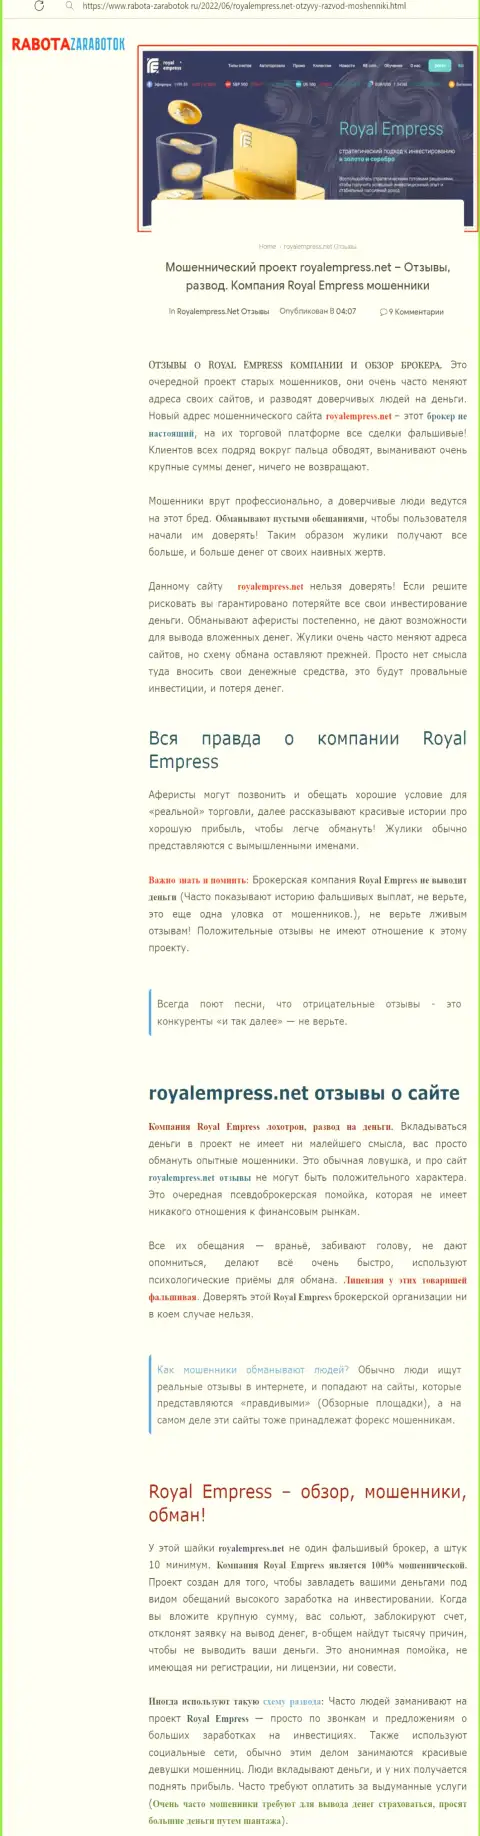 Чем чревато совместное взаимодействие с конторой Royal Empress ??? Обзорная статья о интернет-мошеннике